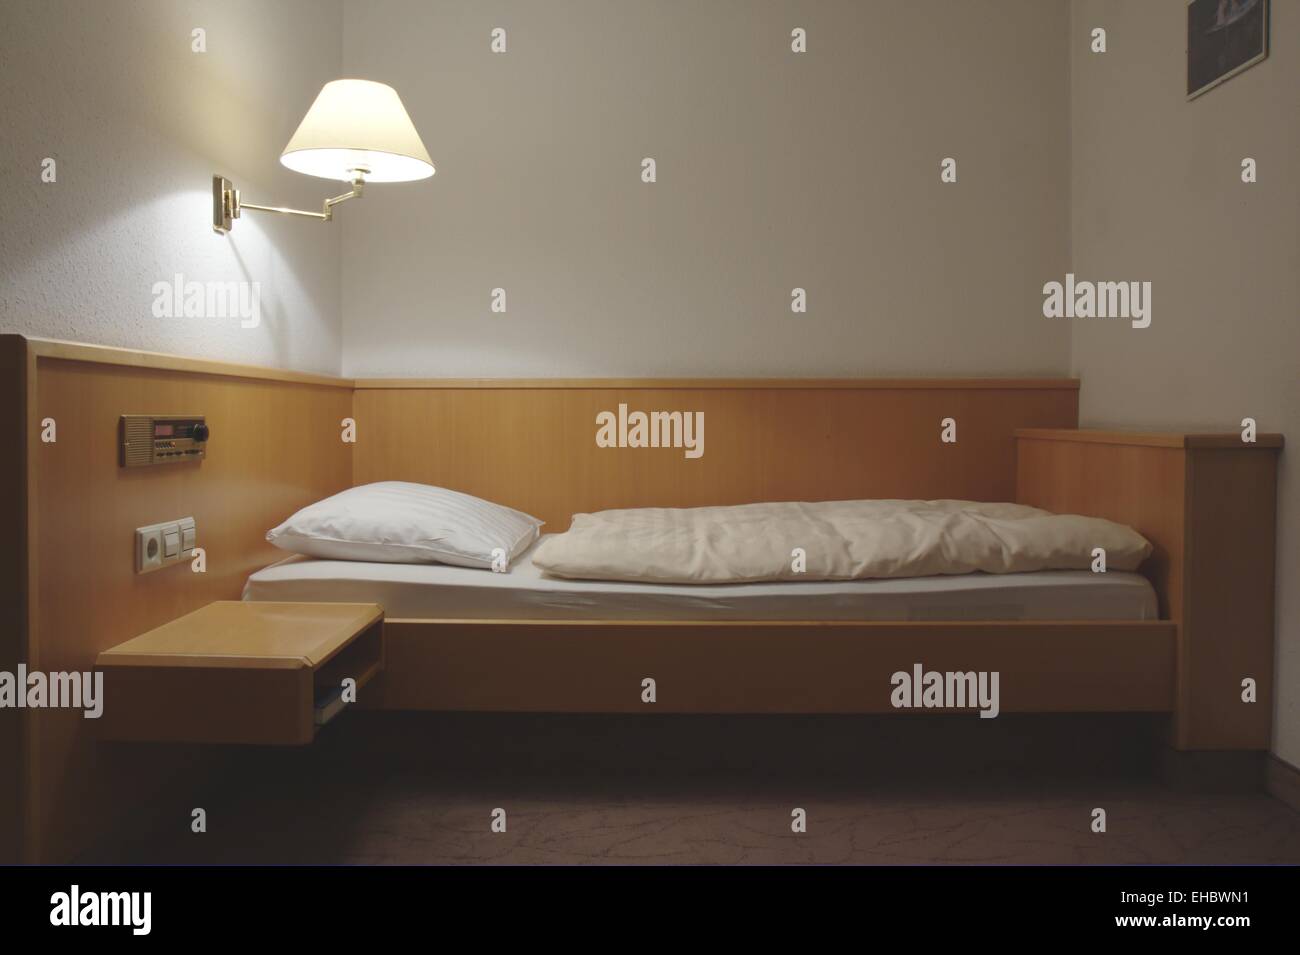 cheap motel room Stock Photo